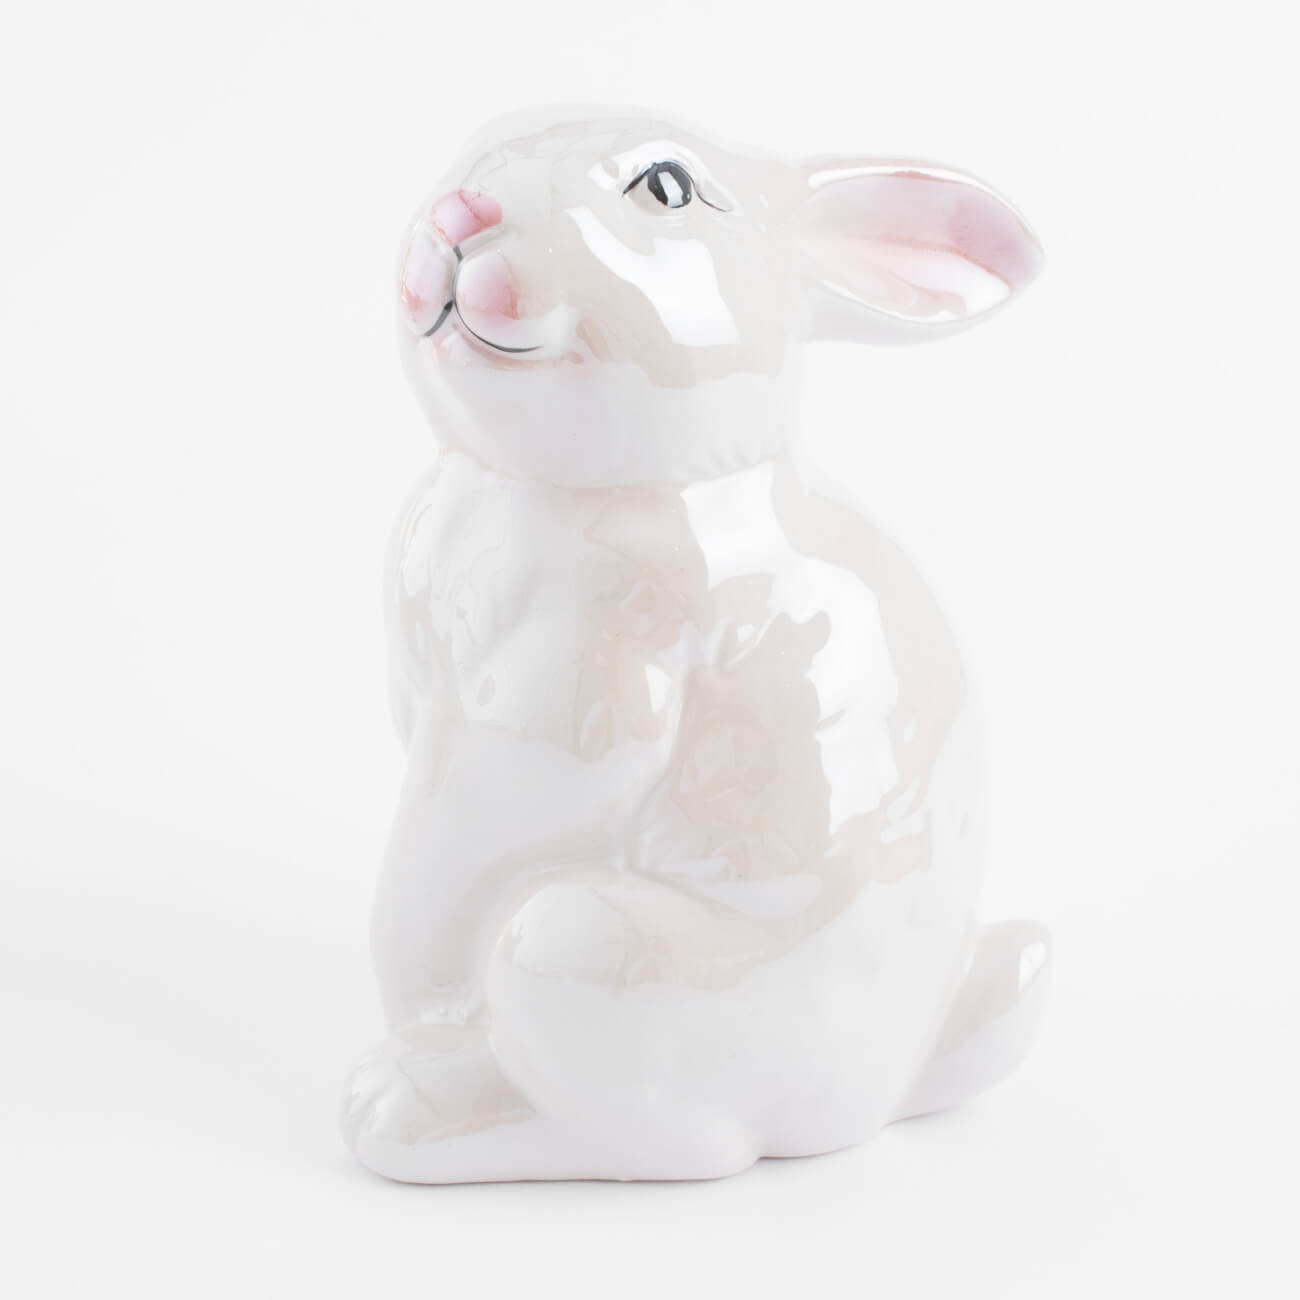 конфетница 18x13 см керамика перламутр кролик с корзиной в ах easter Статуэтка, 16 см, керамика, молочная, перламутр, Кролик, Easter